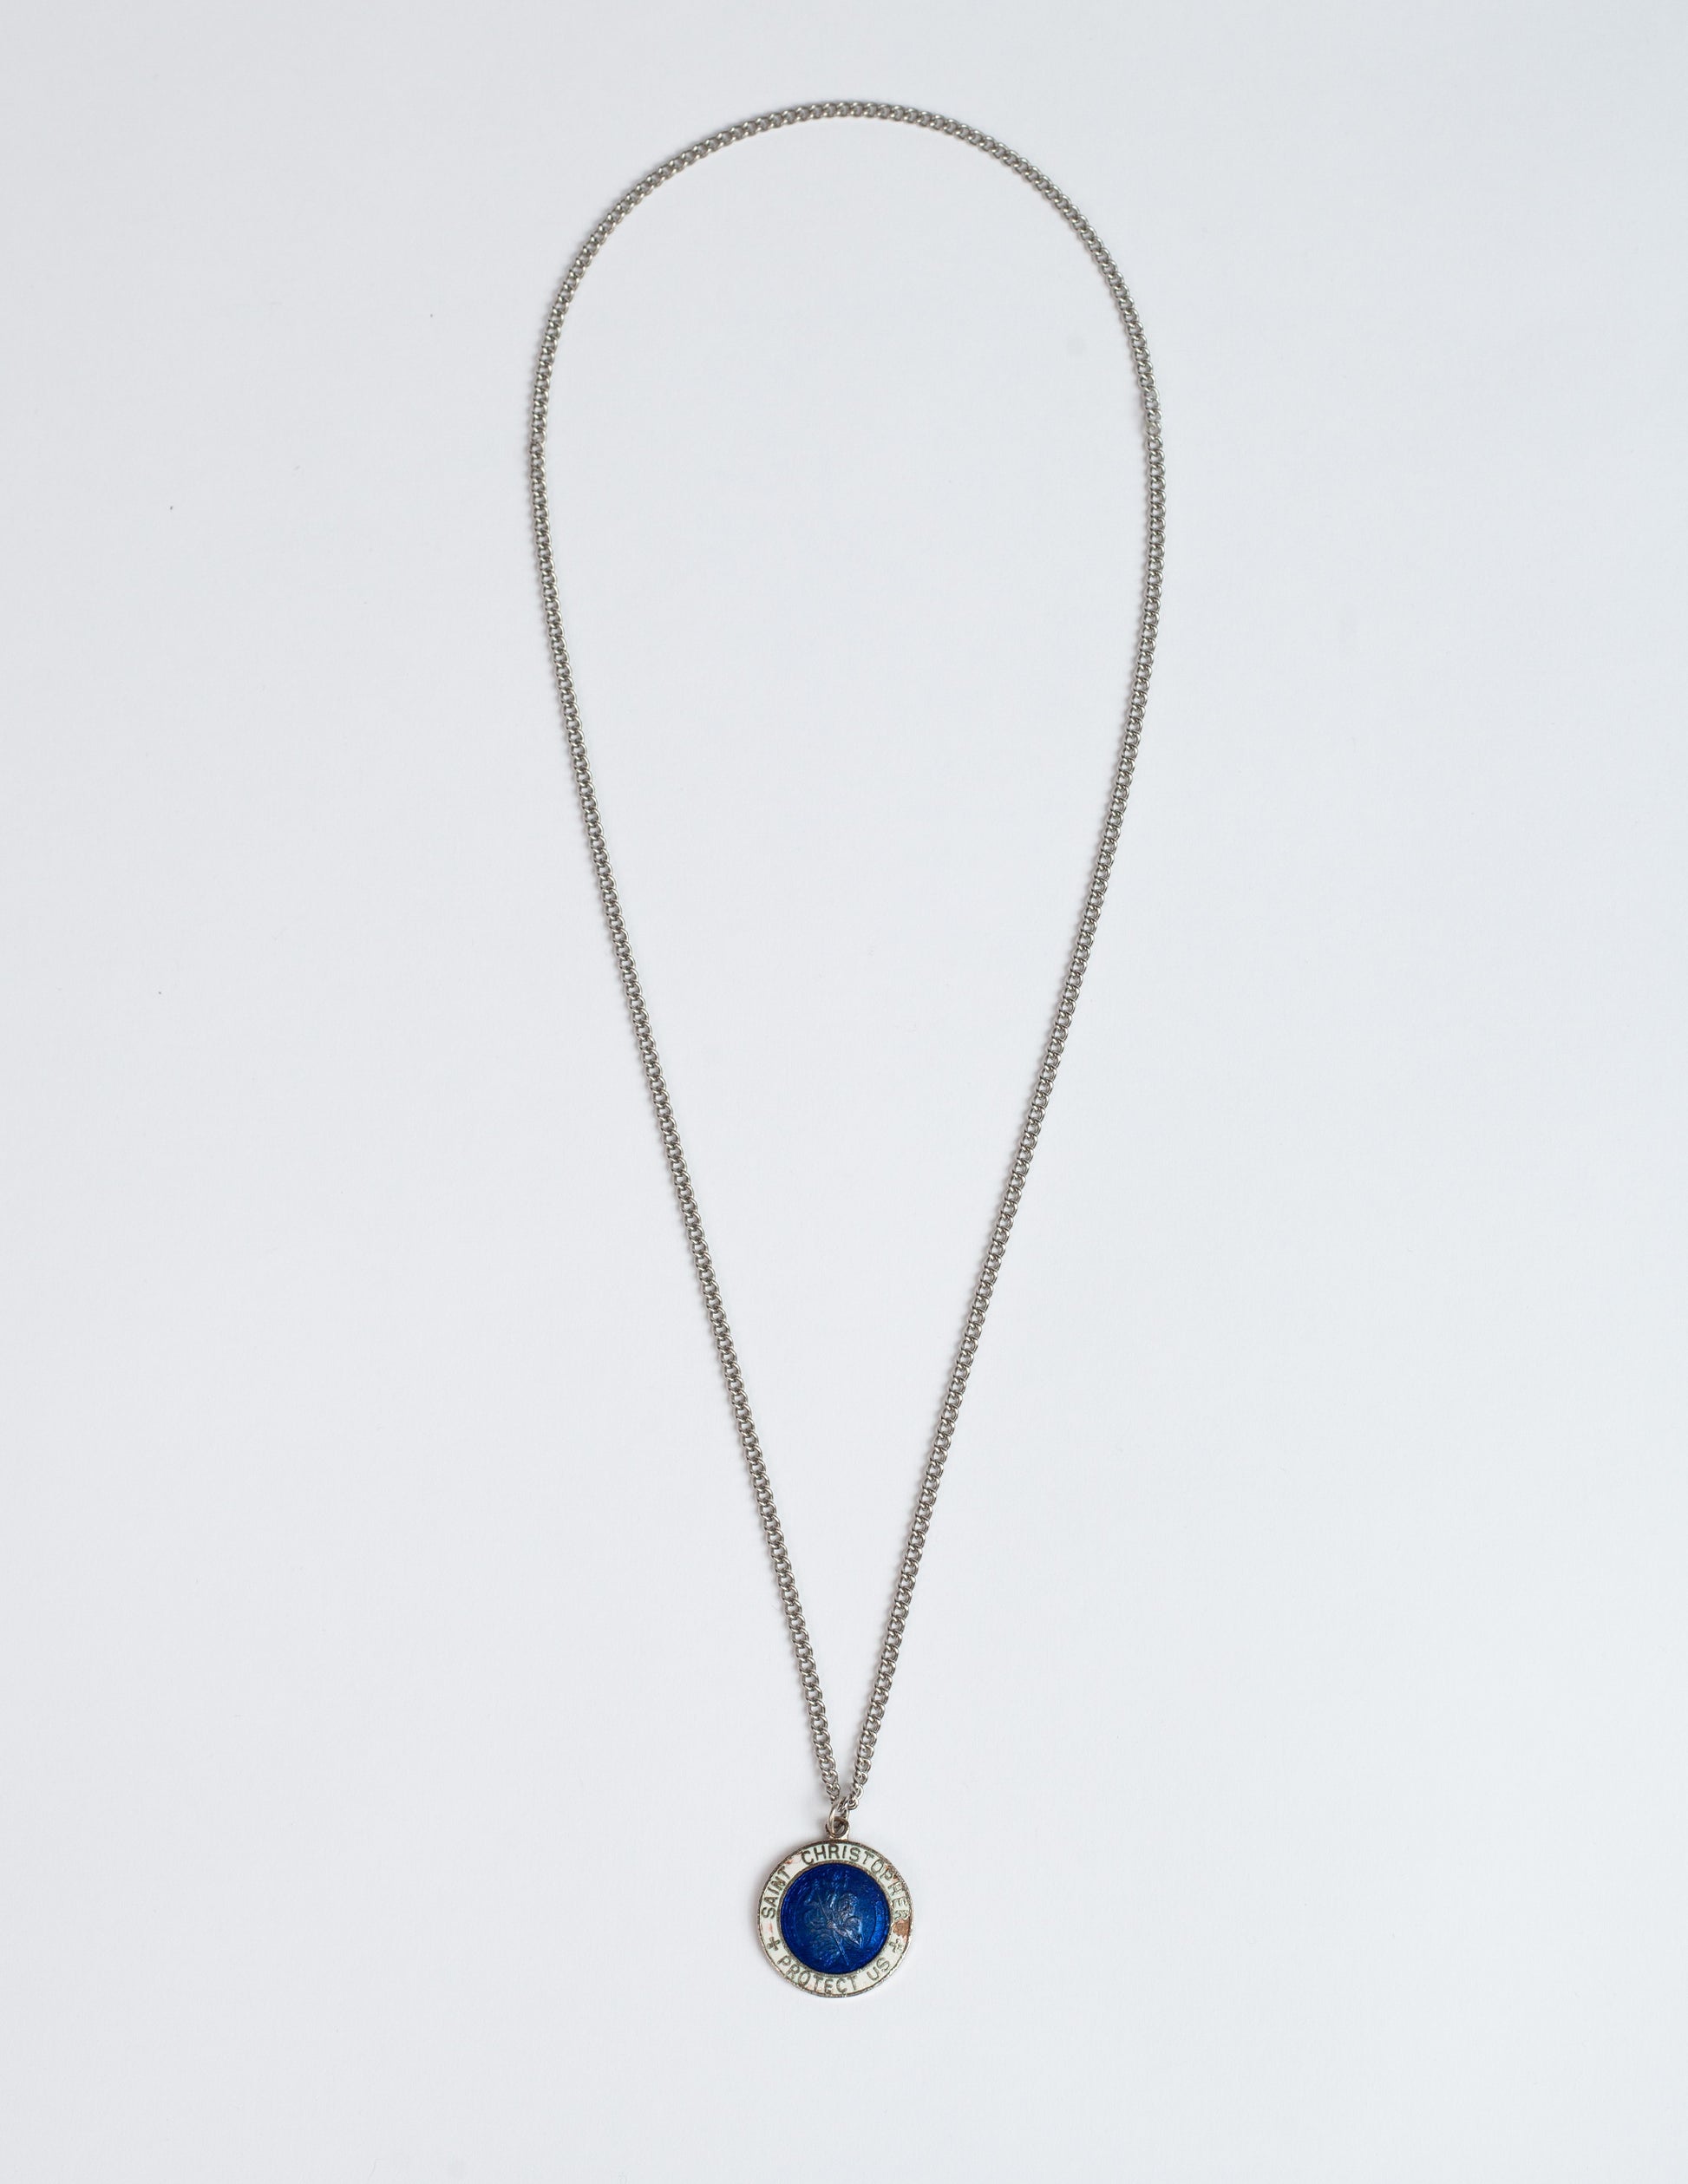 1960's Vintage Glass Blue & White 1" Saint Christopher Surfer Necklace